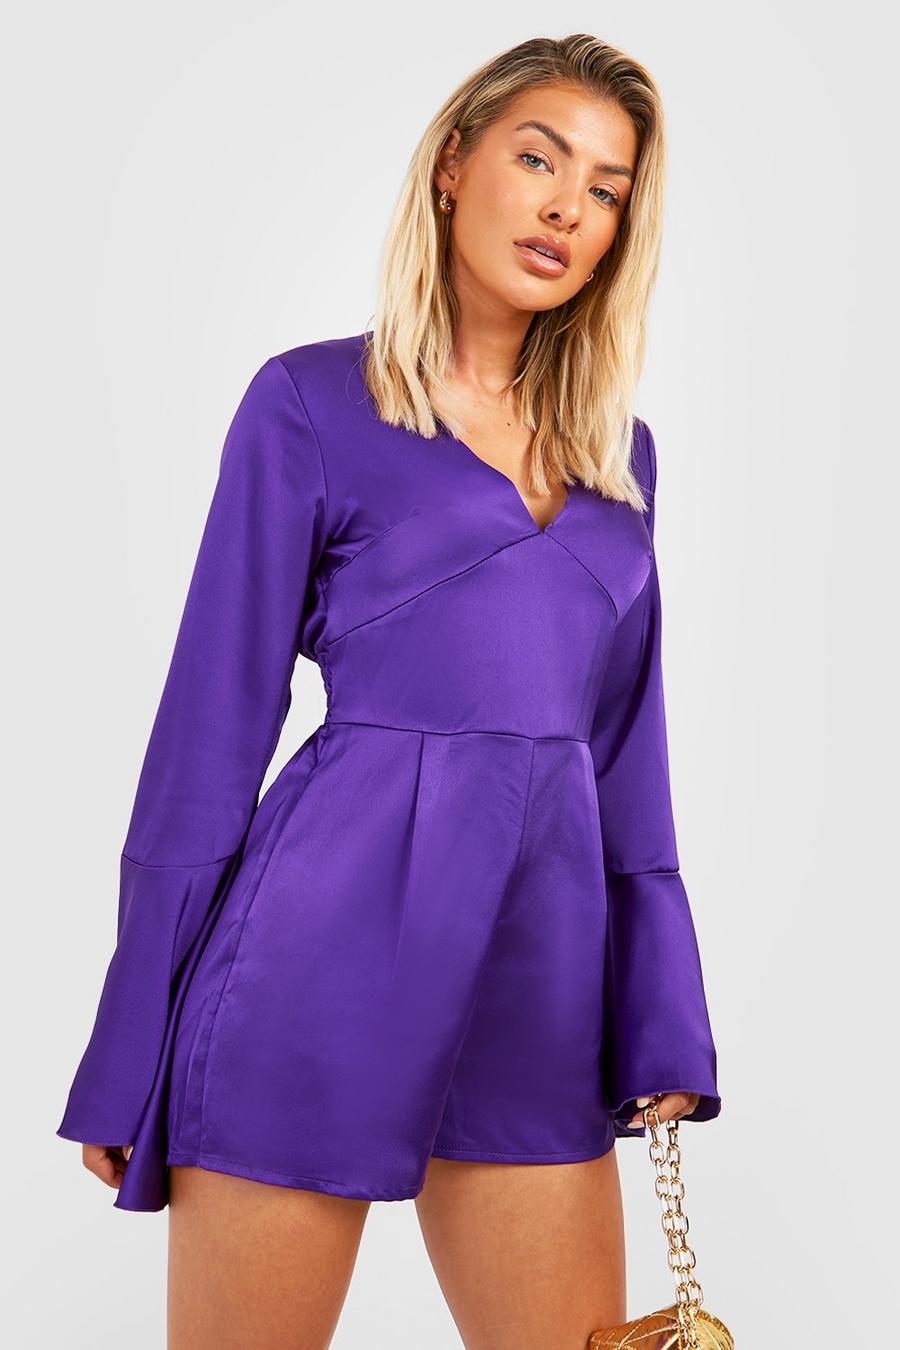 Jewel purple Satin Flare Sleeve Playsuit